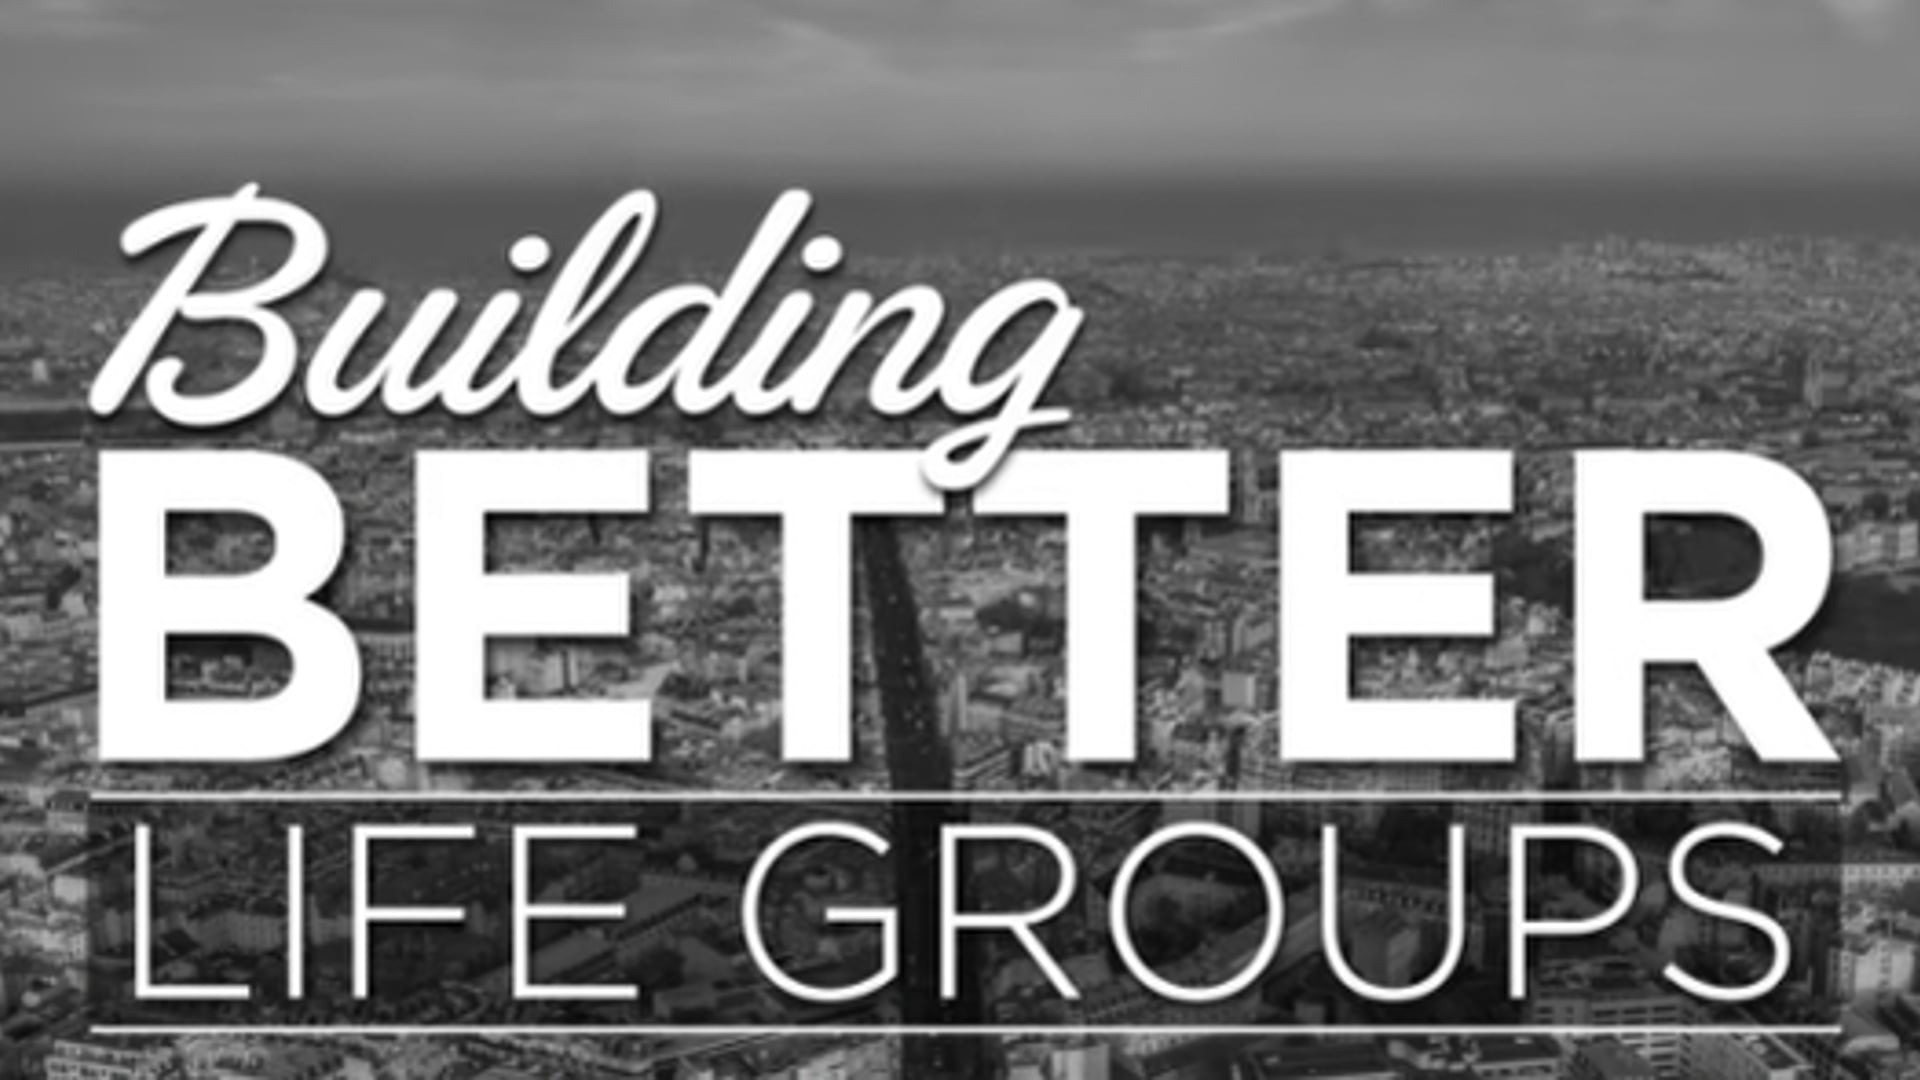 Building better lifegroups